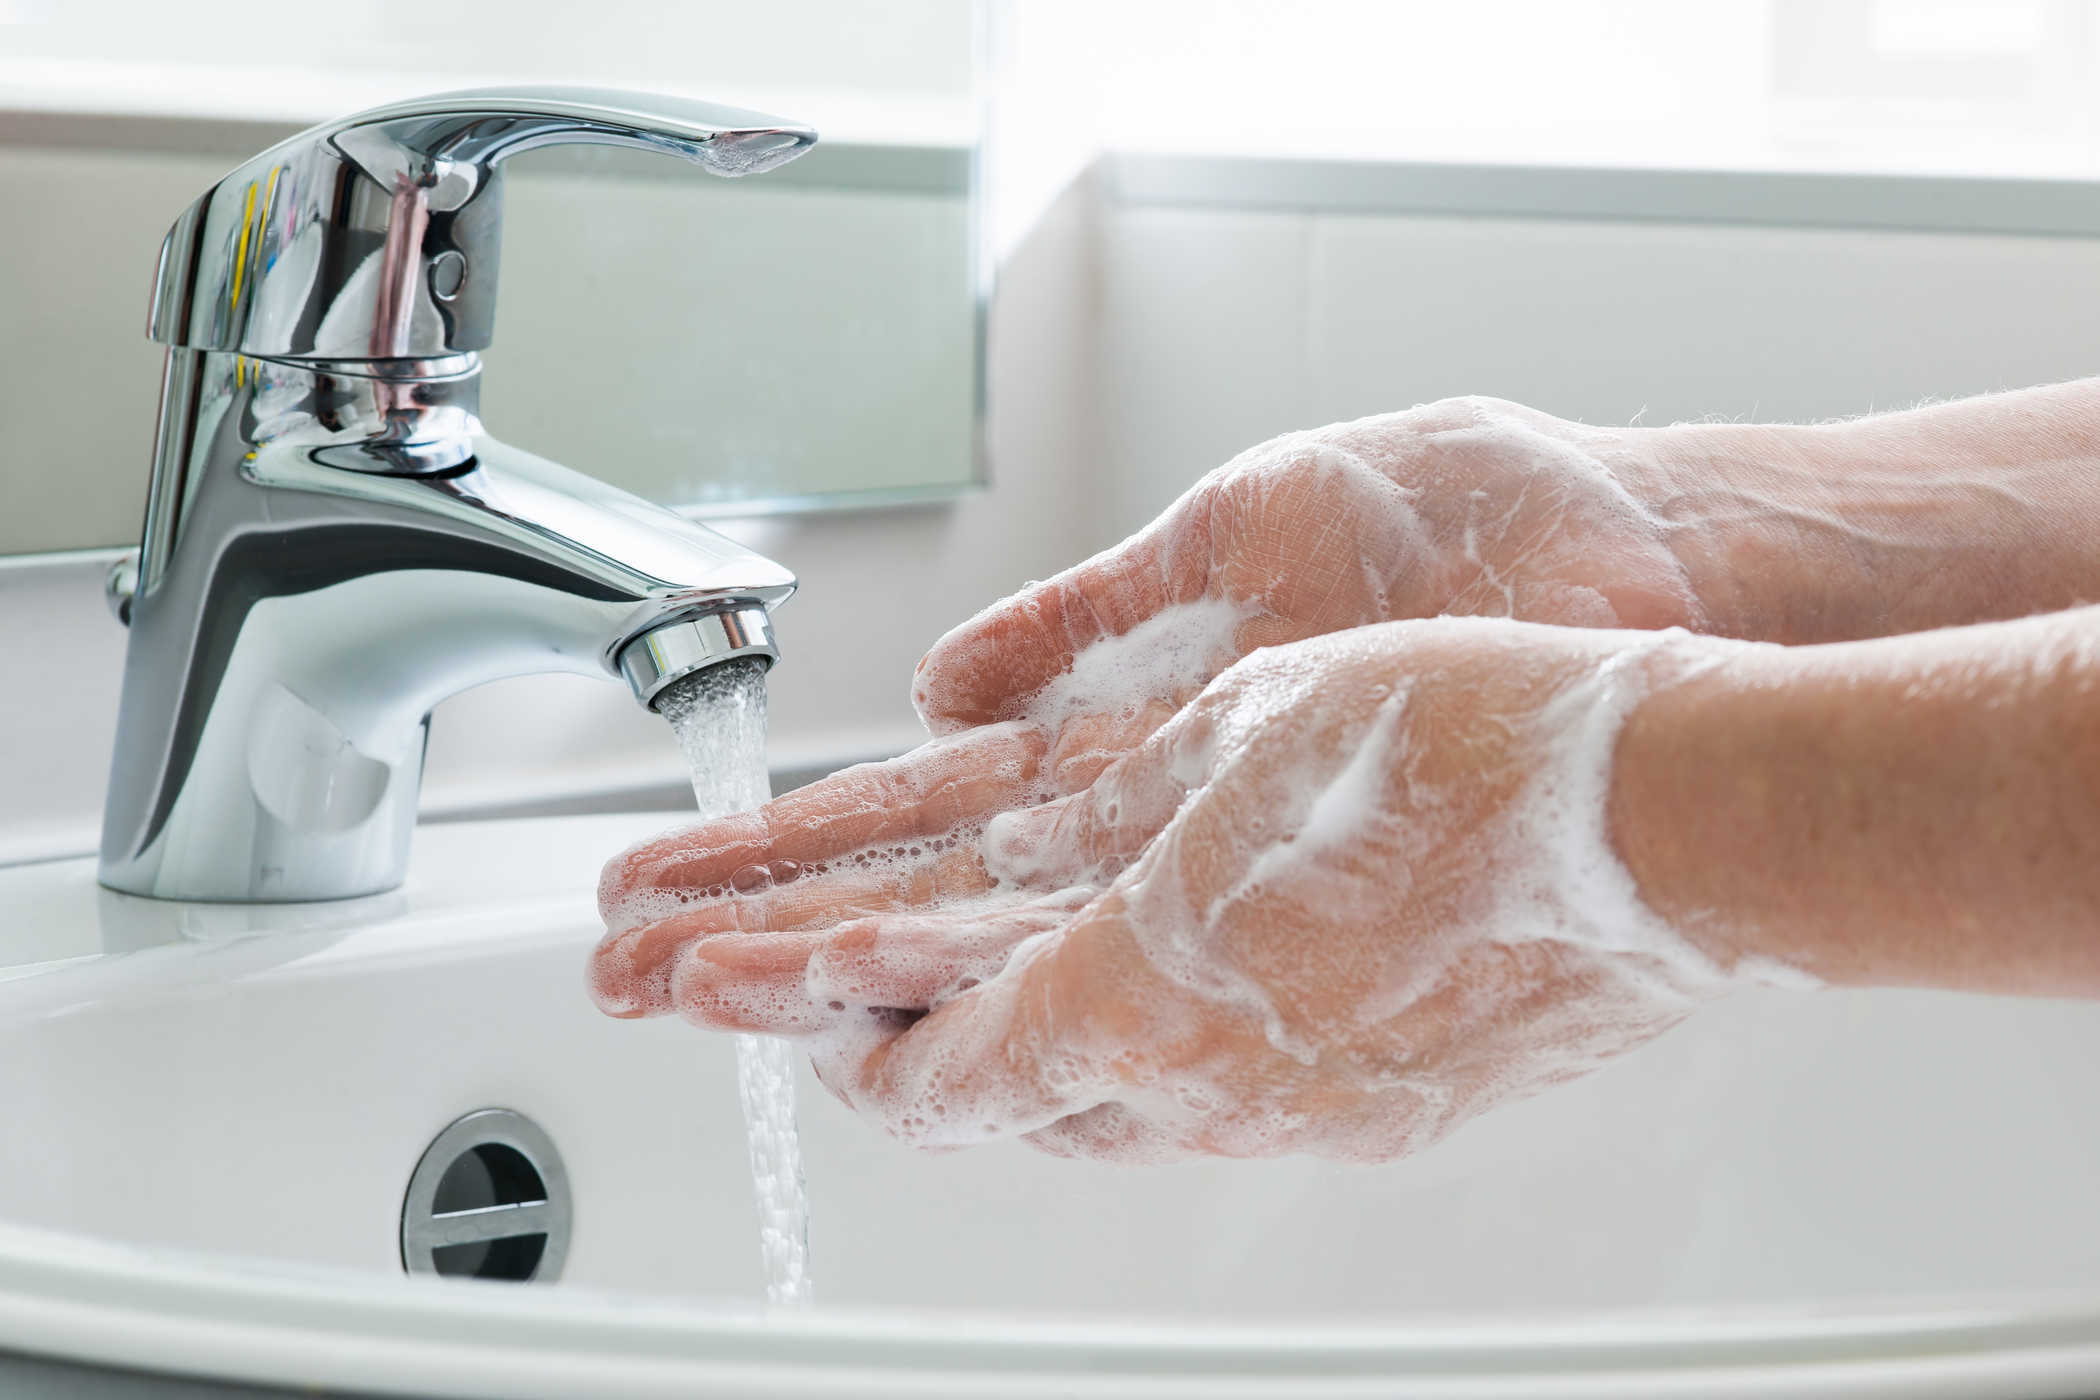   Rửa tay thường xuyên ngăn ngừa virus, vi khuẩn lây bệnh  